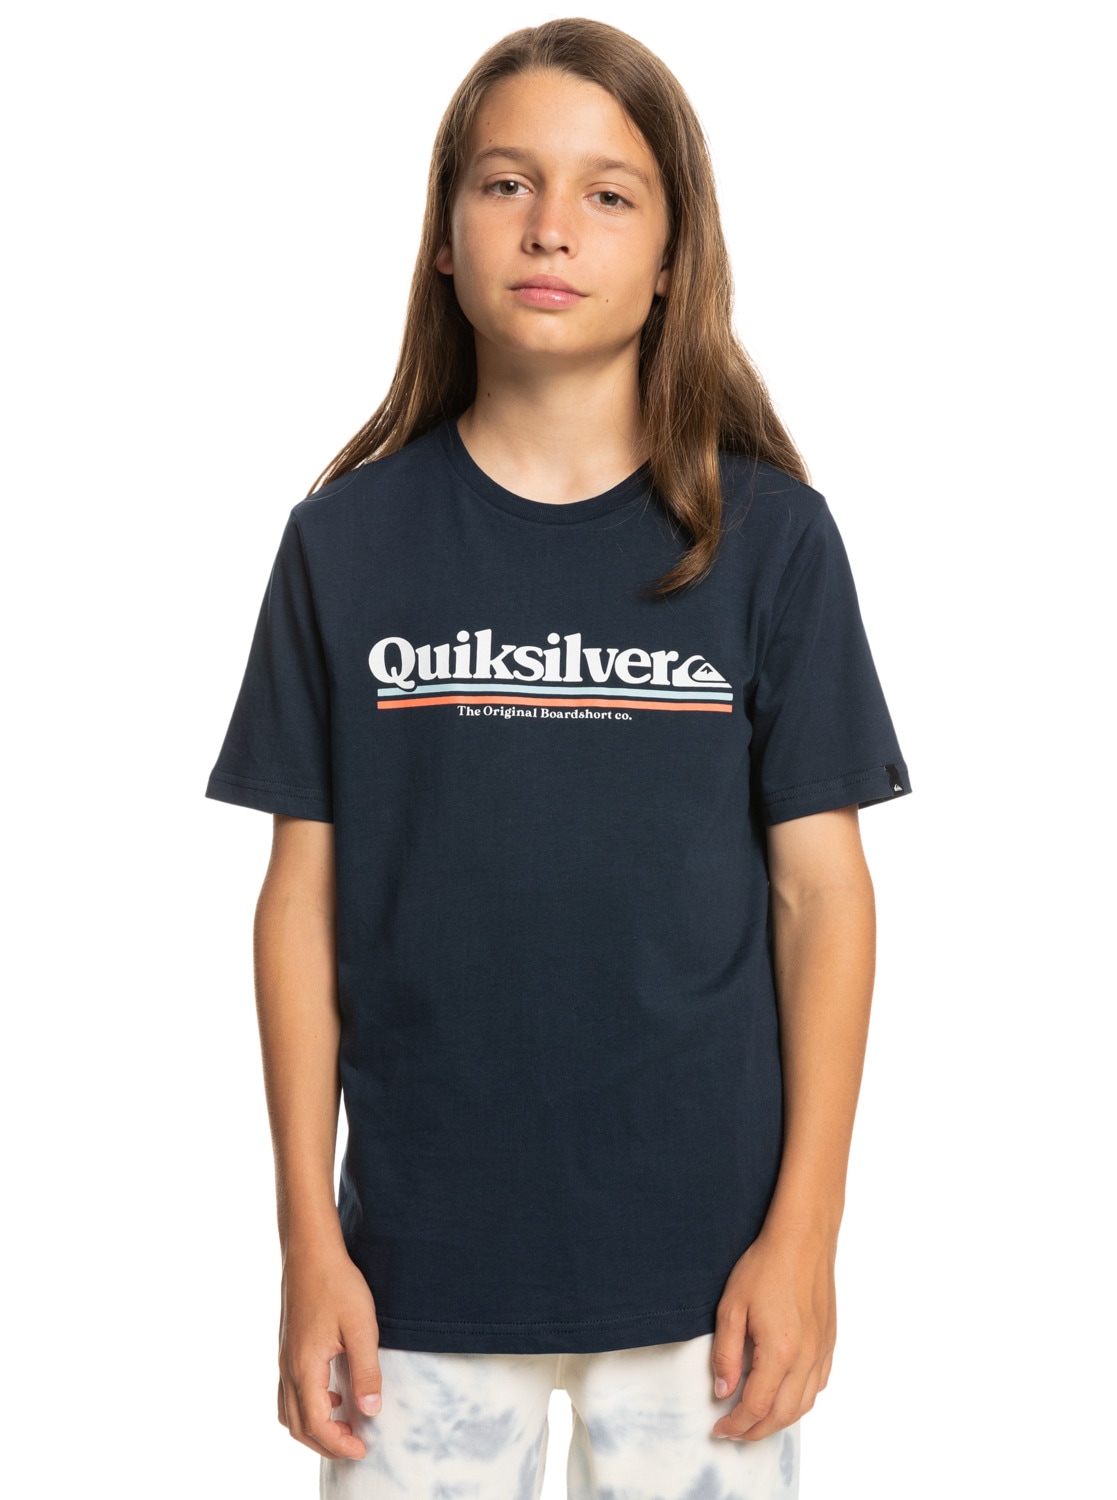 Quiksilver T-Shirt »Between The Lines« von Quiksilver